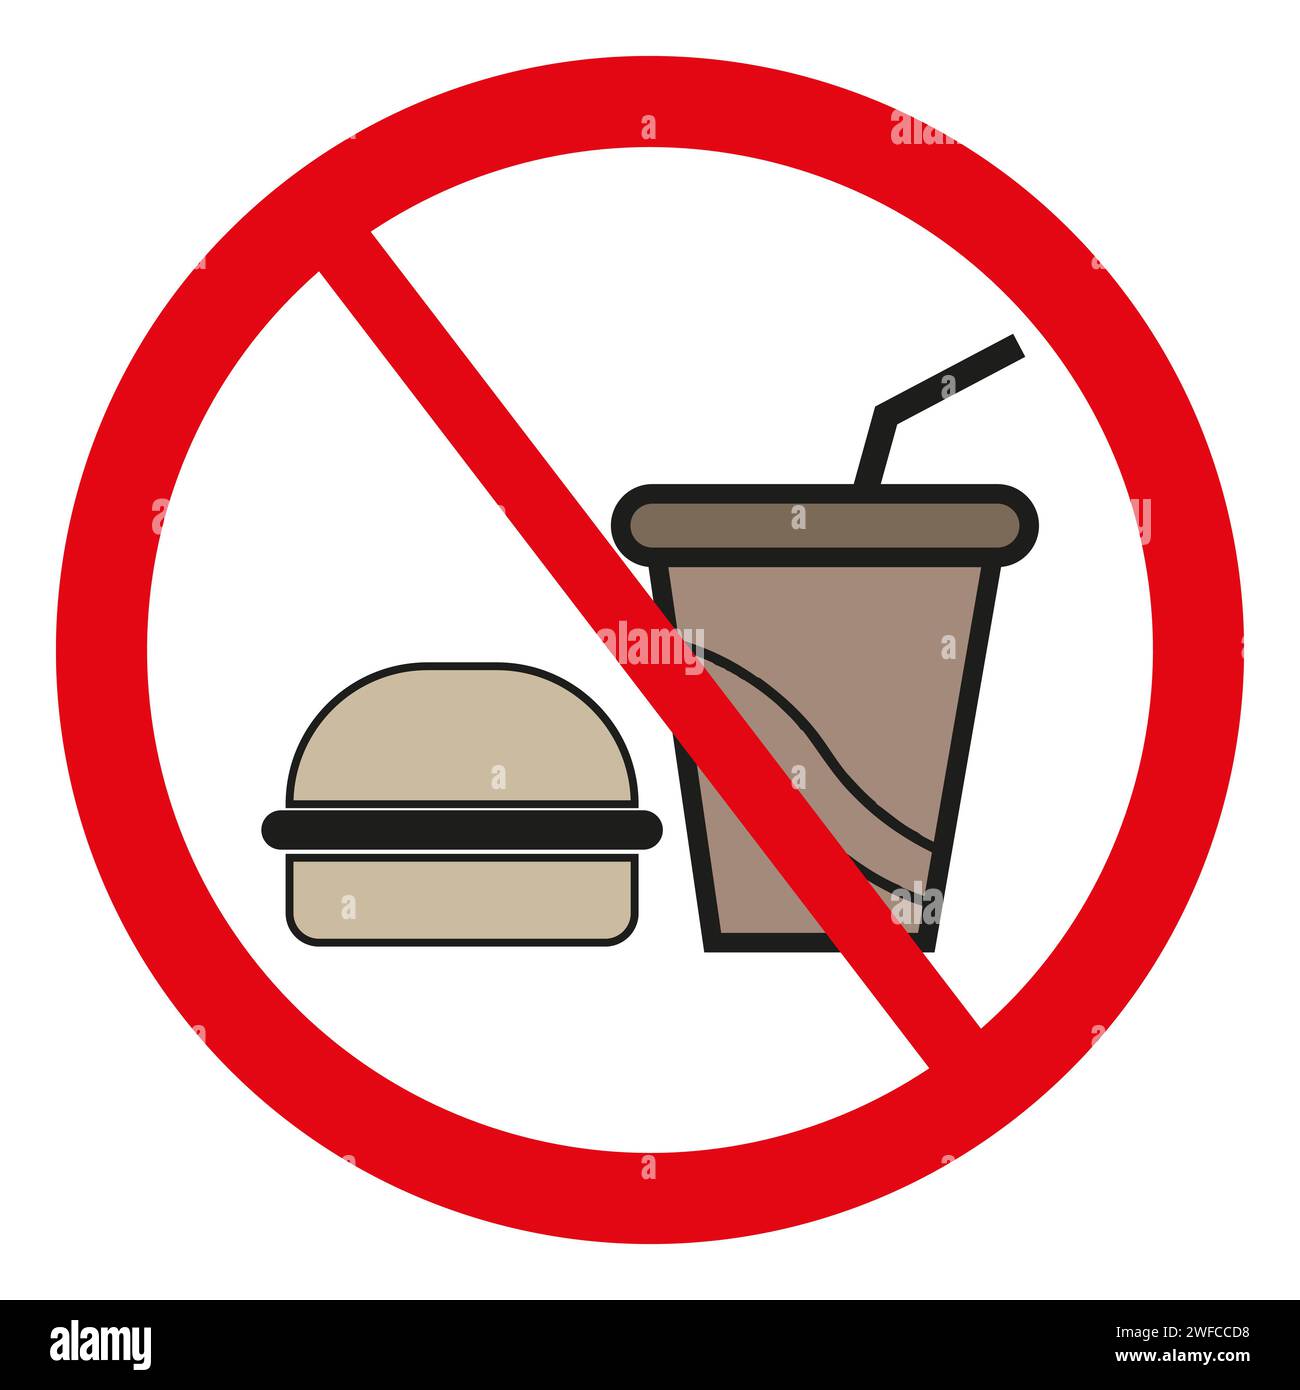 Cartello proibizionismo Burger cola. Segno vietato. Simbolo icona Ban. Illustrazione vettoriale. Immagine stock. EPS 10. Illustrazione Vettoriale